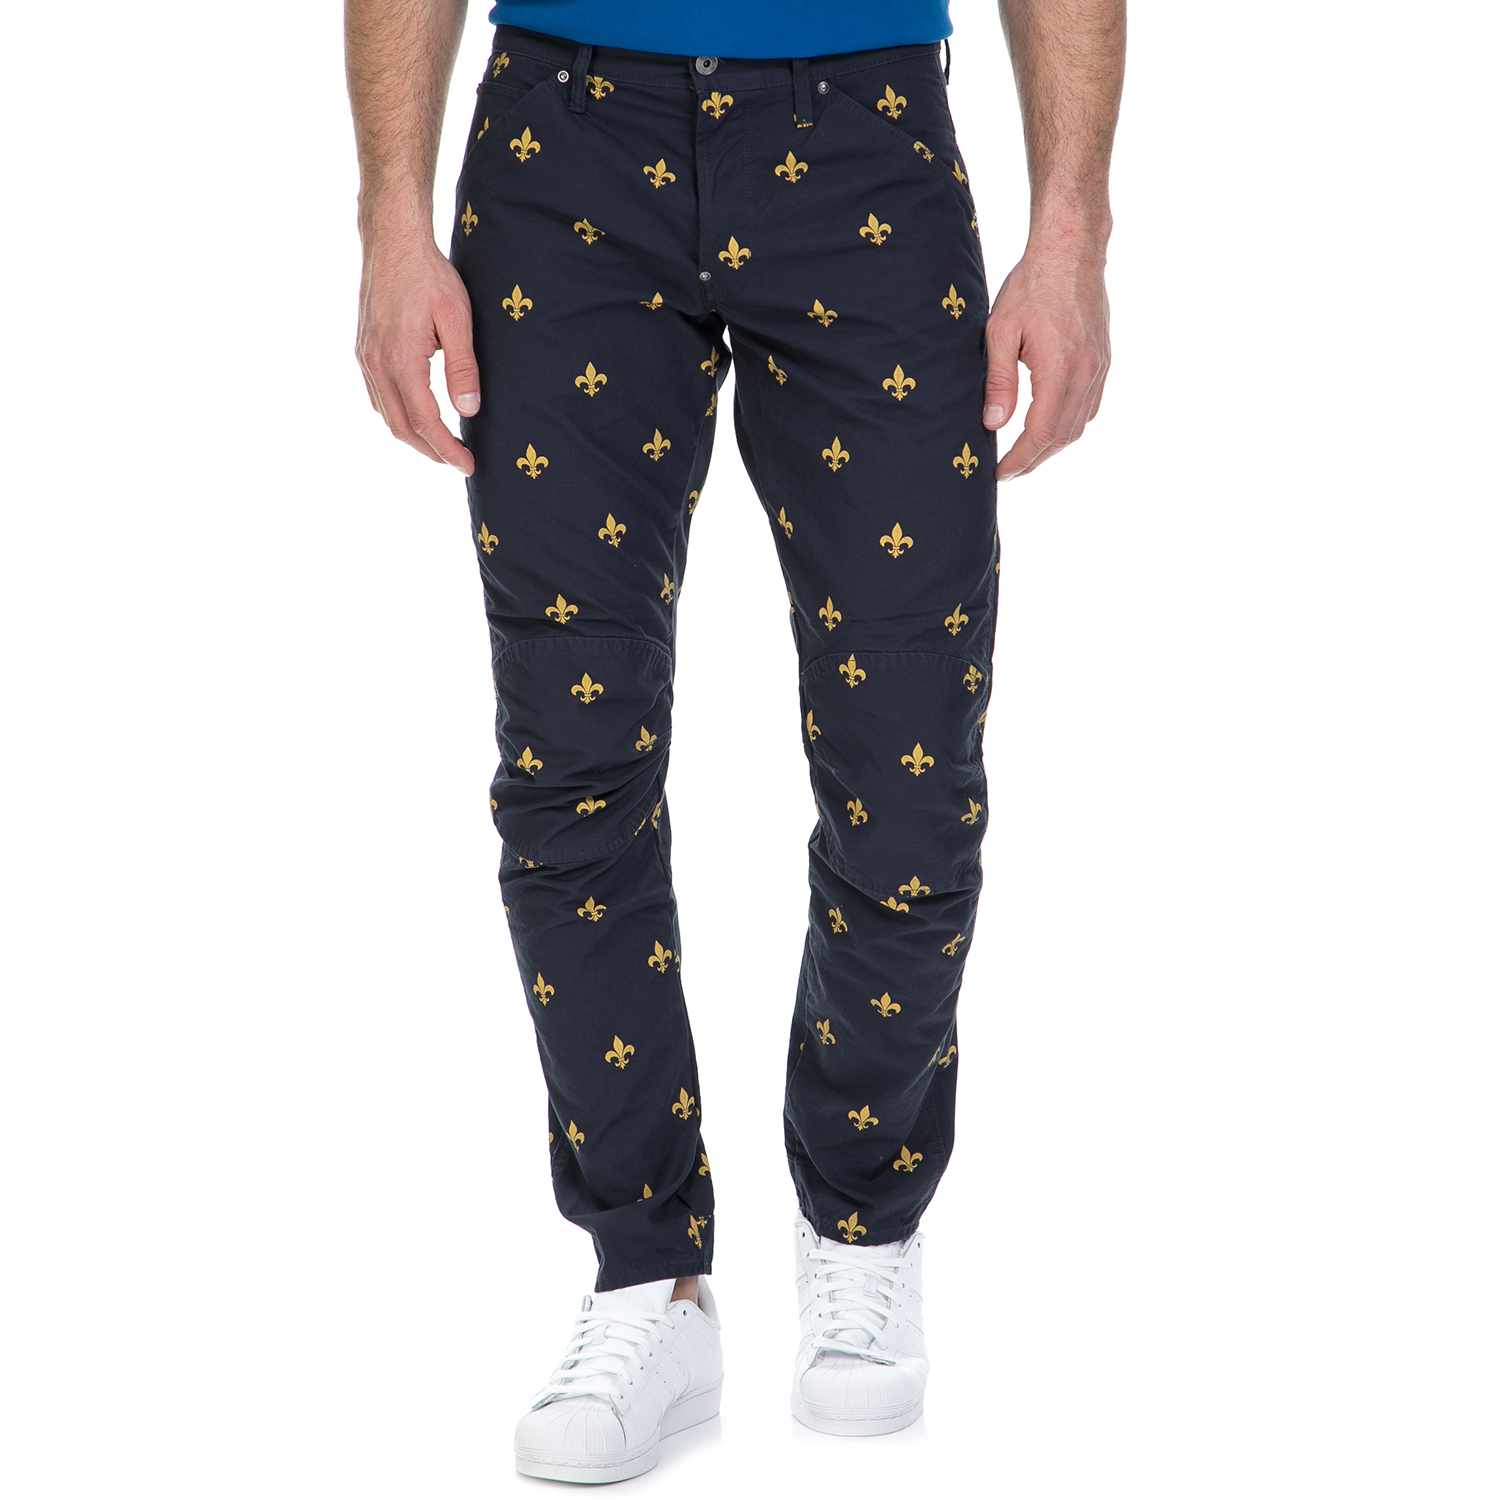 Ανδρικά/Ρούχα/Παντελόνια/Ισια Γραμμή G-STAR RAW - Ανδρικό παντελόνι G-Star Raw 5622 3D Tapered COJ μπλε - χρυσό